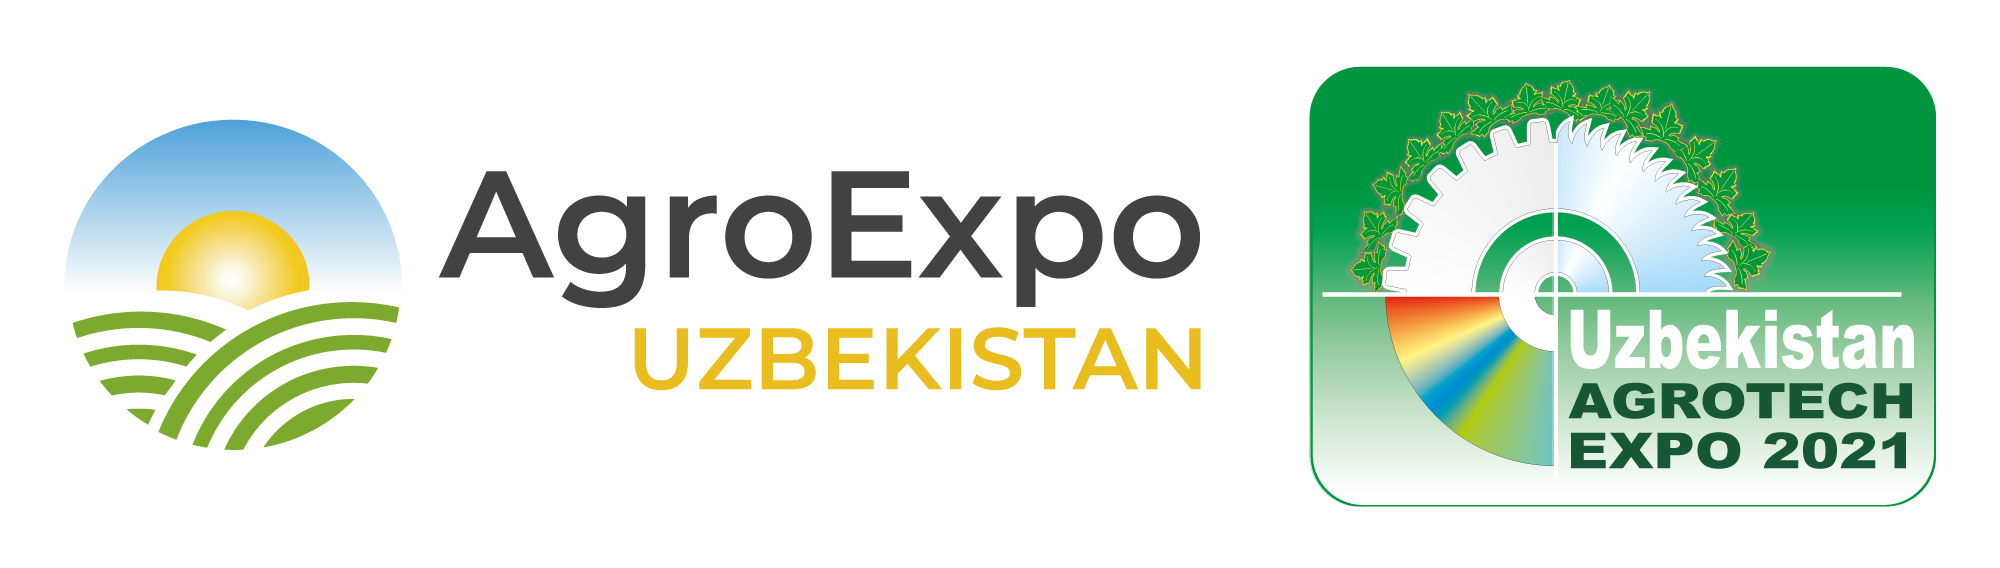 AgroExpoUzbekistan-Agrotech-Expo---en